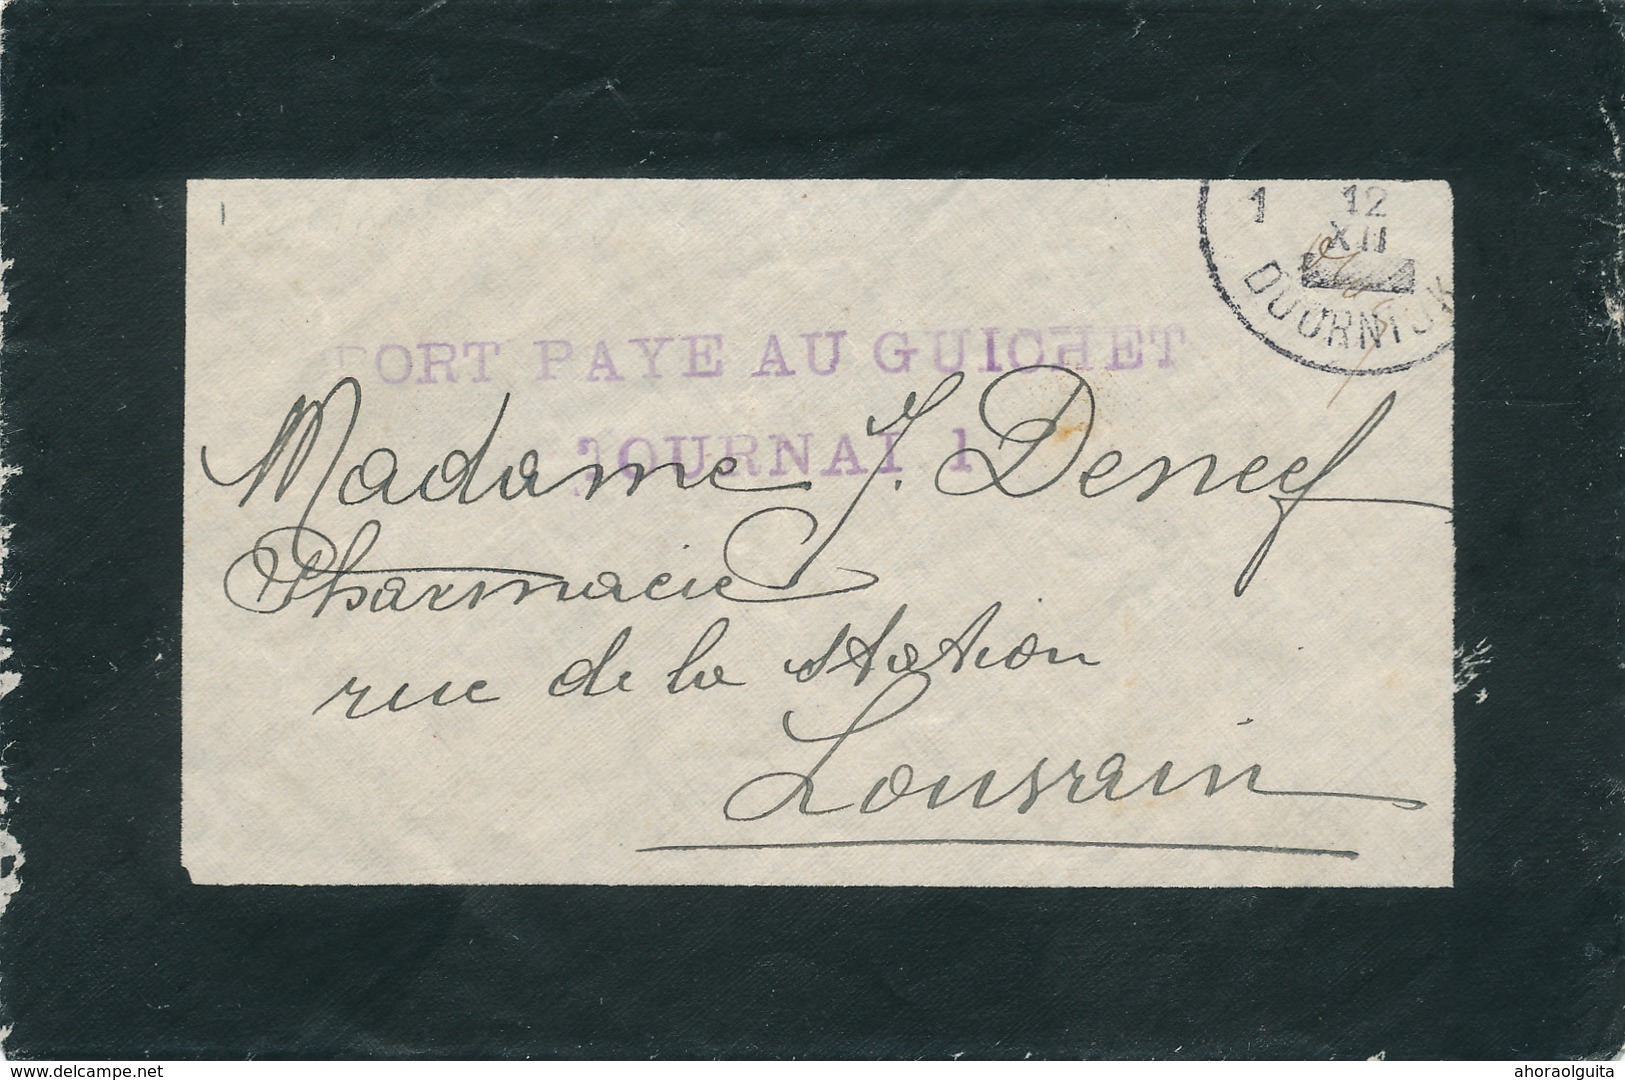 104/29 - Enveloppe De Deuil Cachets De FORTUNE TOURNAI 12 XII (1918) Et Port Payé Au Guichet TOURNAU 1 - Fortune (1919)